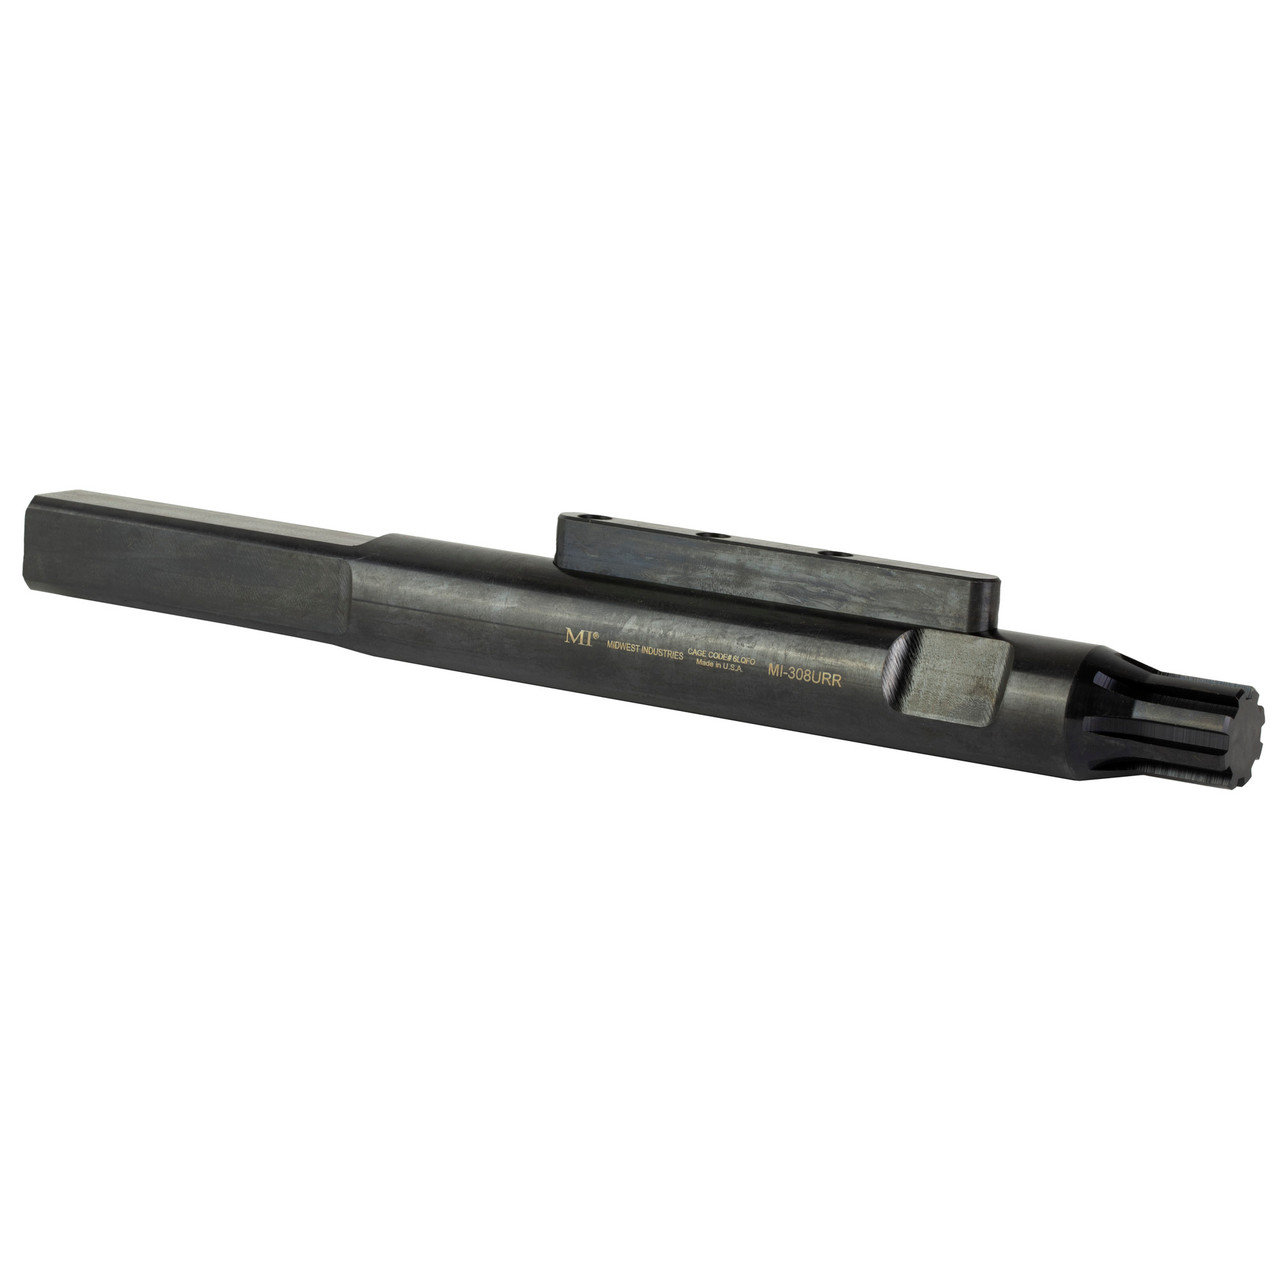 Midwest Industries MI-308URR Upper Receiver Rod .308